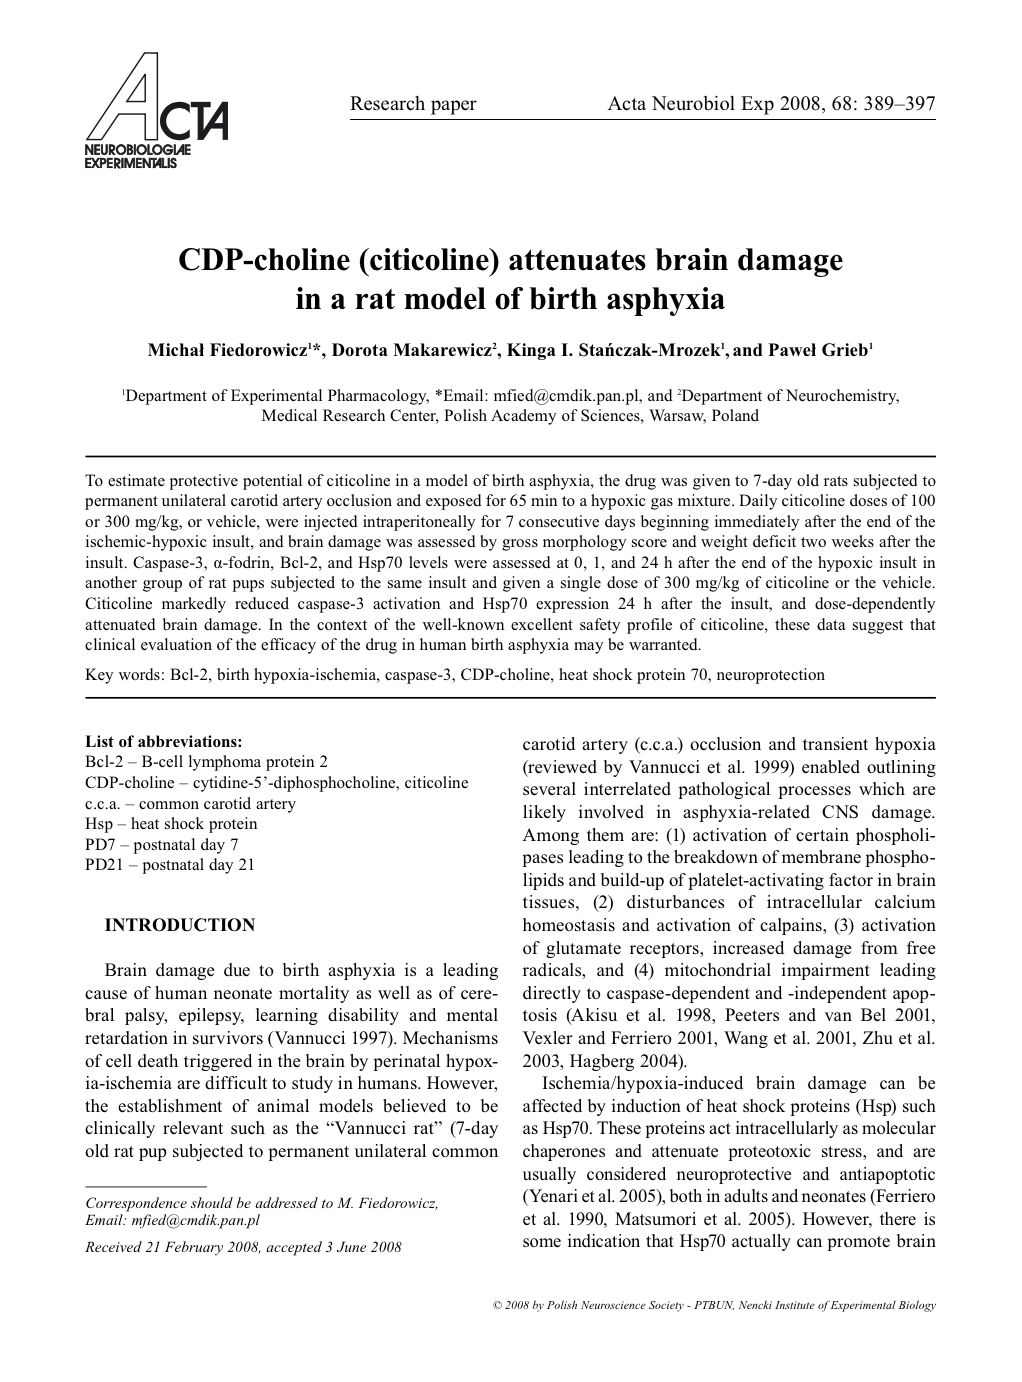 CDP-choline (citicoline) attenuates brain damage in a rat model of birth asphyxia